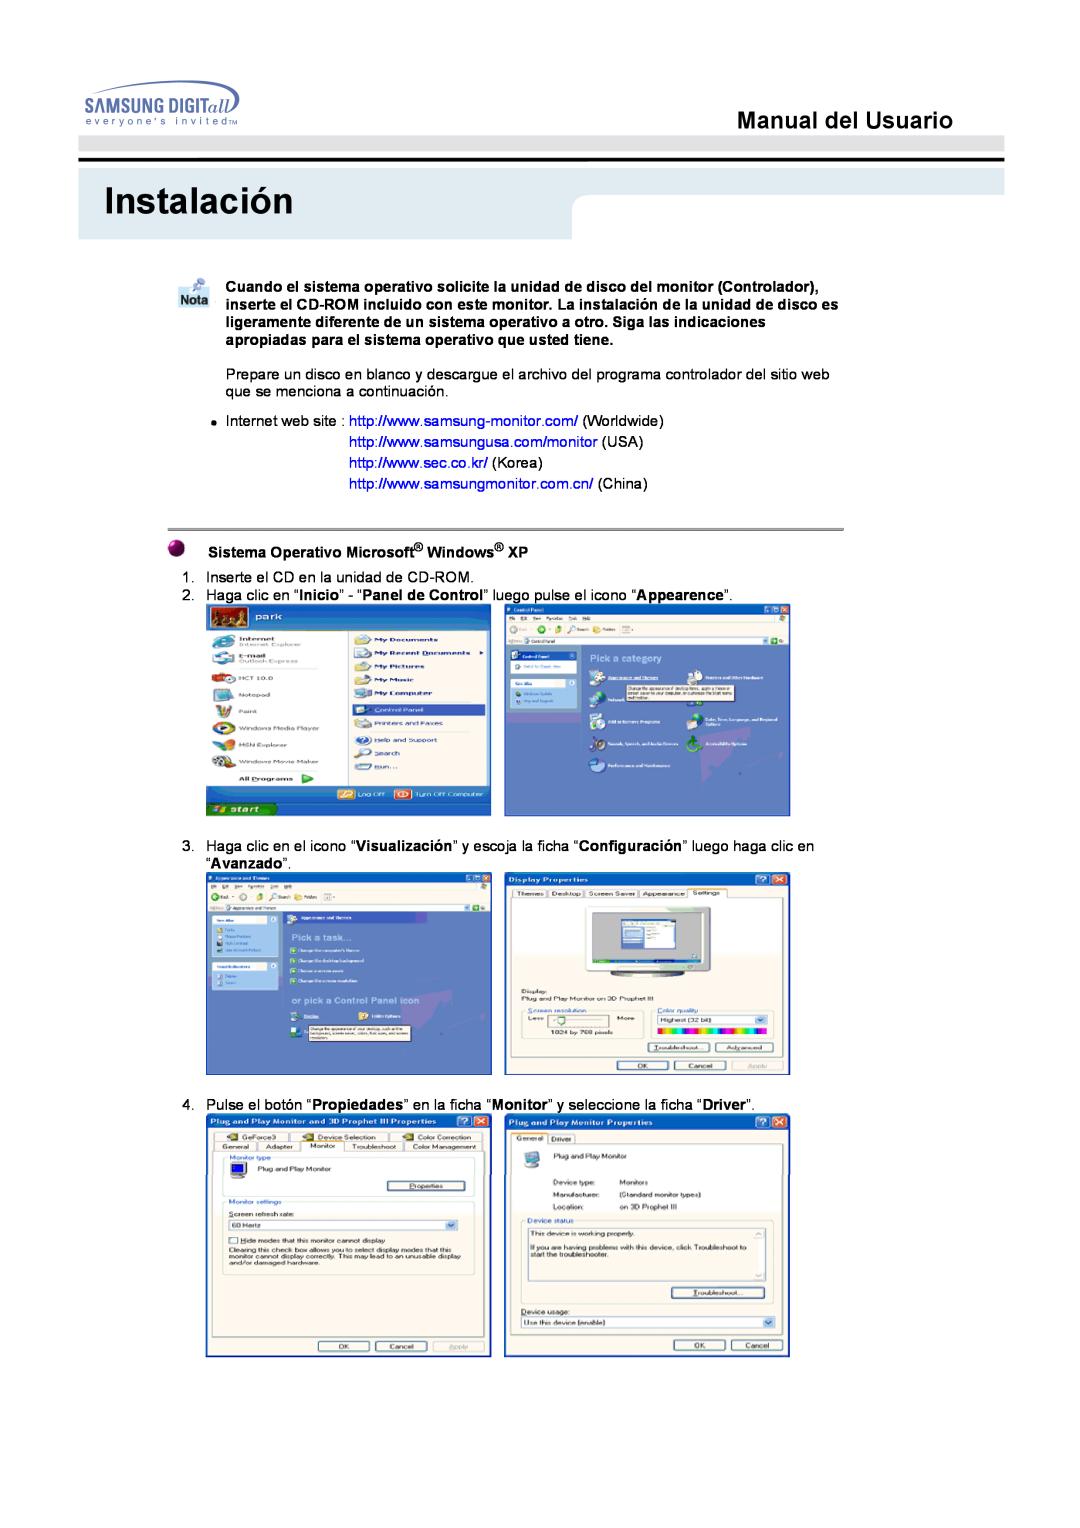 Samsung MO17ESZSZ/EDC, MO17ESZS/EDC, MO17ESDS/EDC Instalación, Manual del Usuario, Sistema Operativo Microsoft Windows XP 